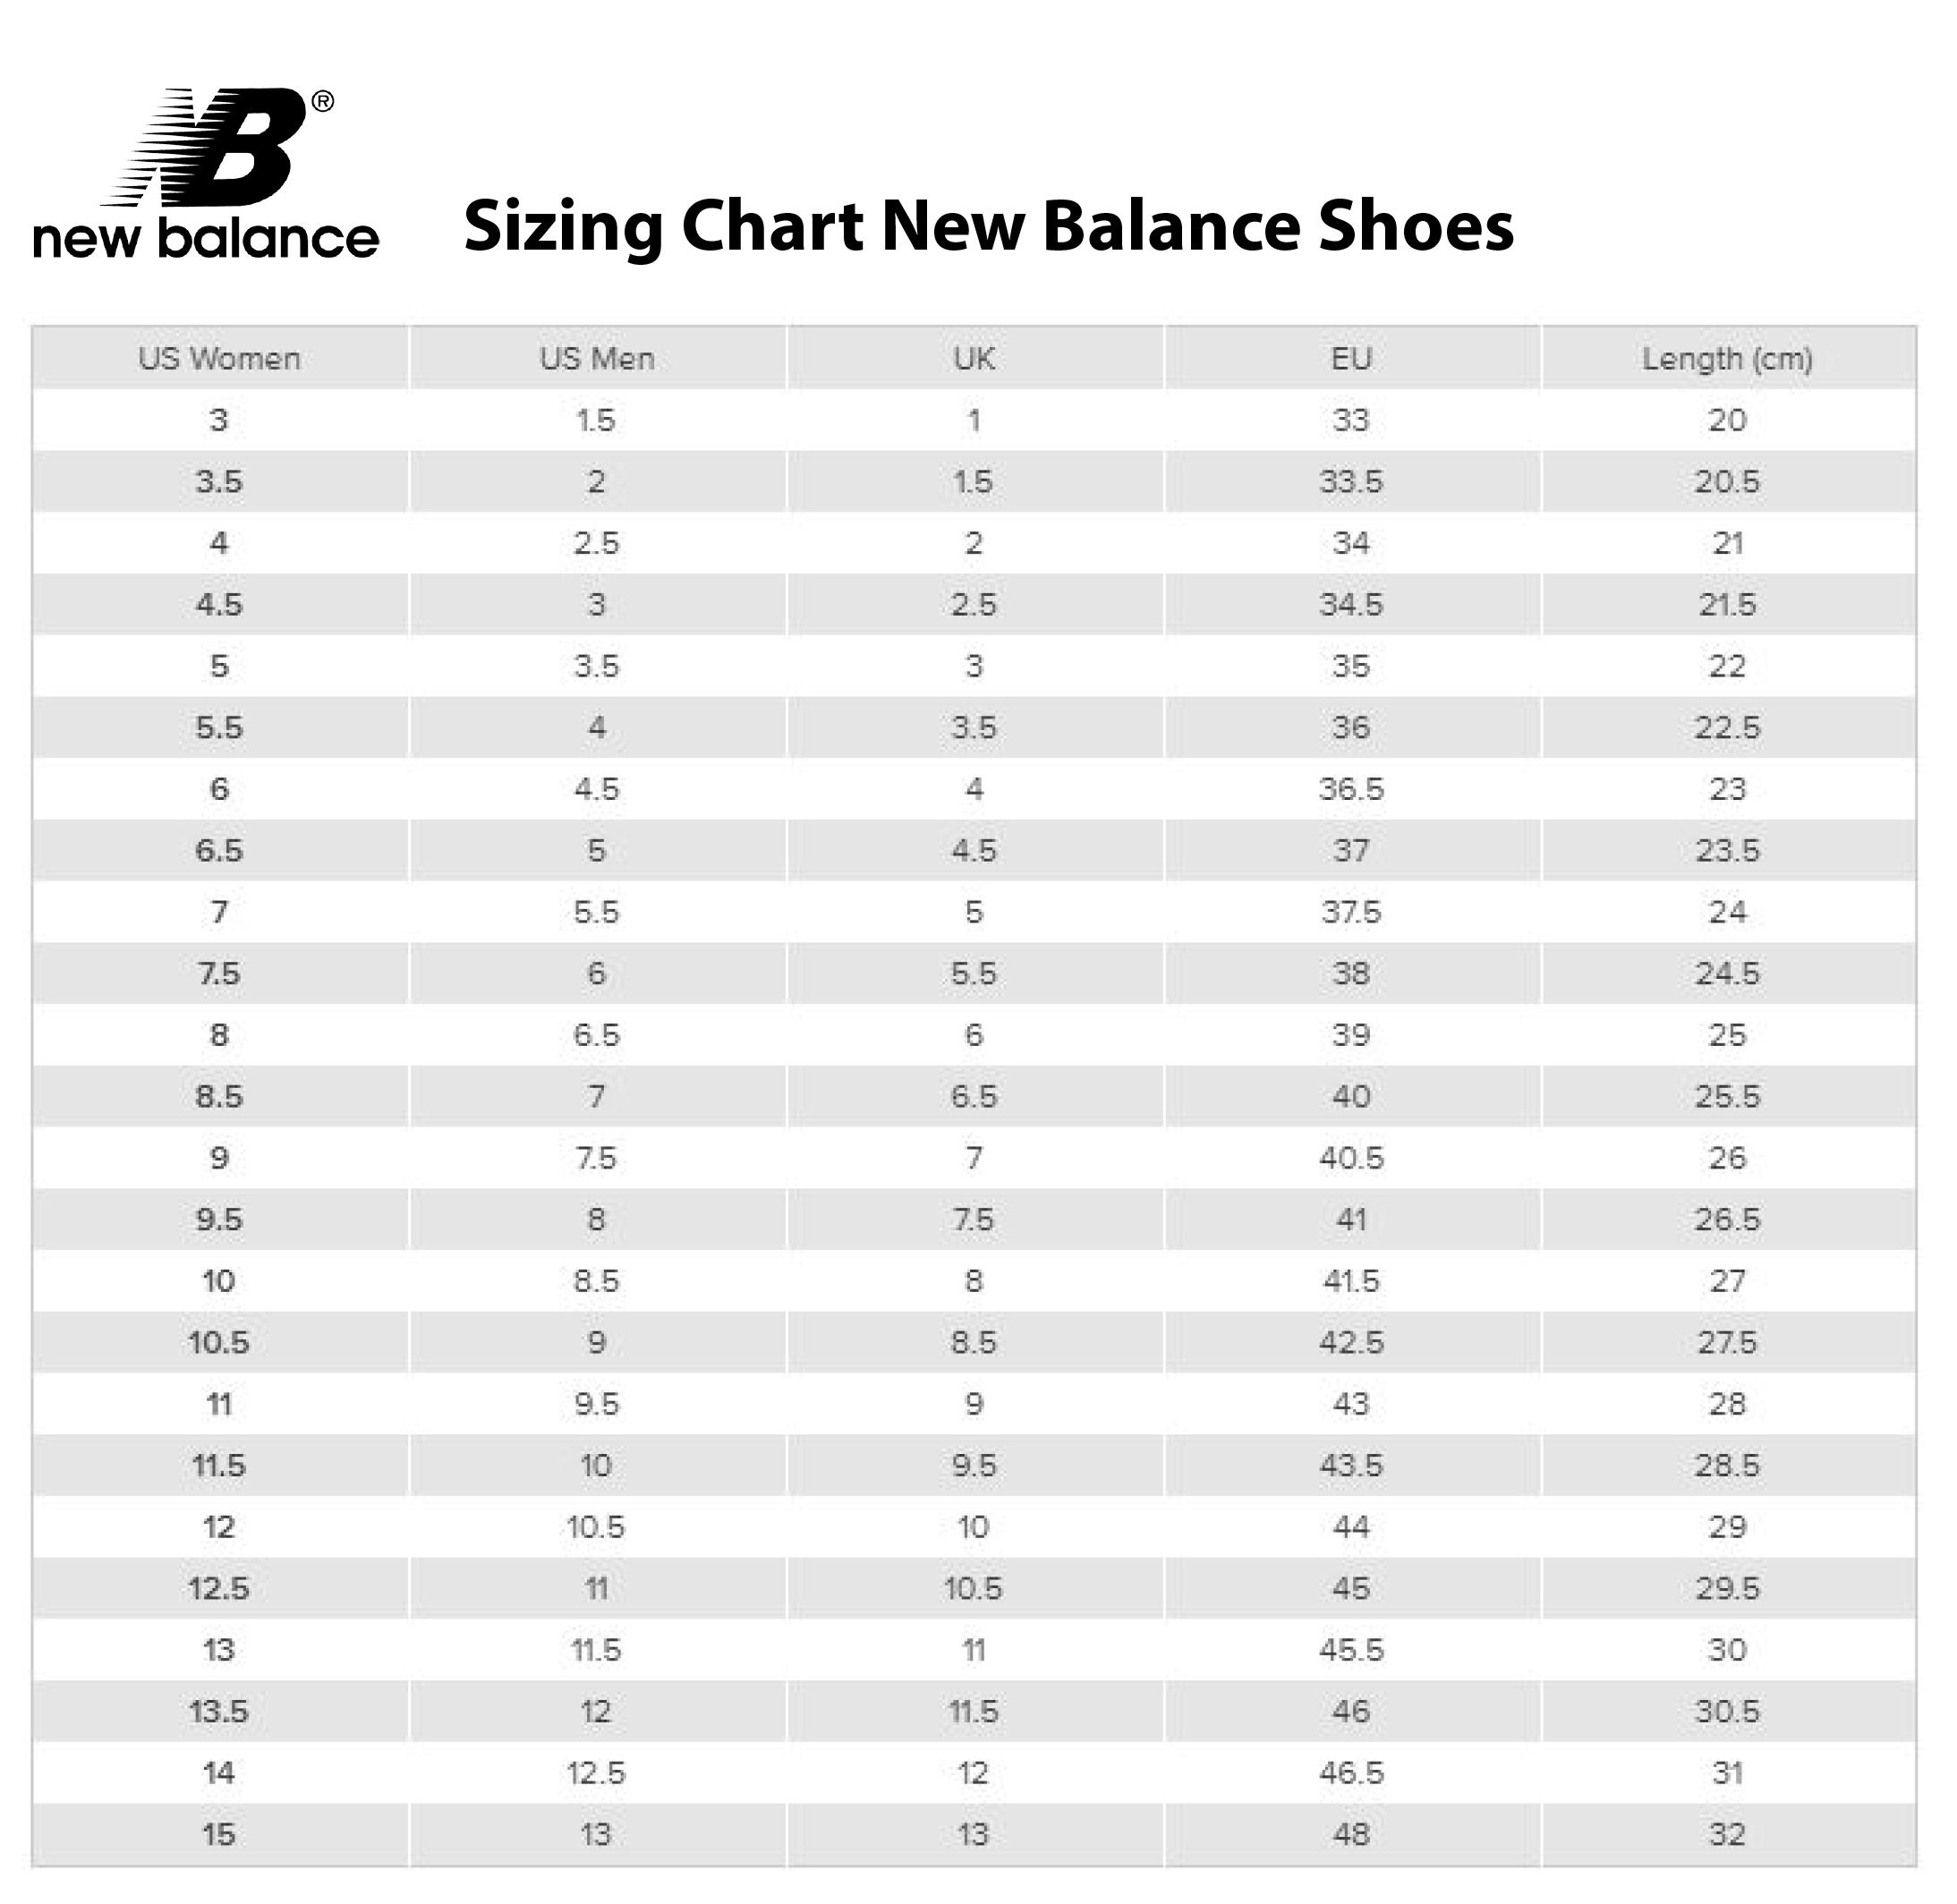 new balance bra size chart